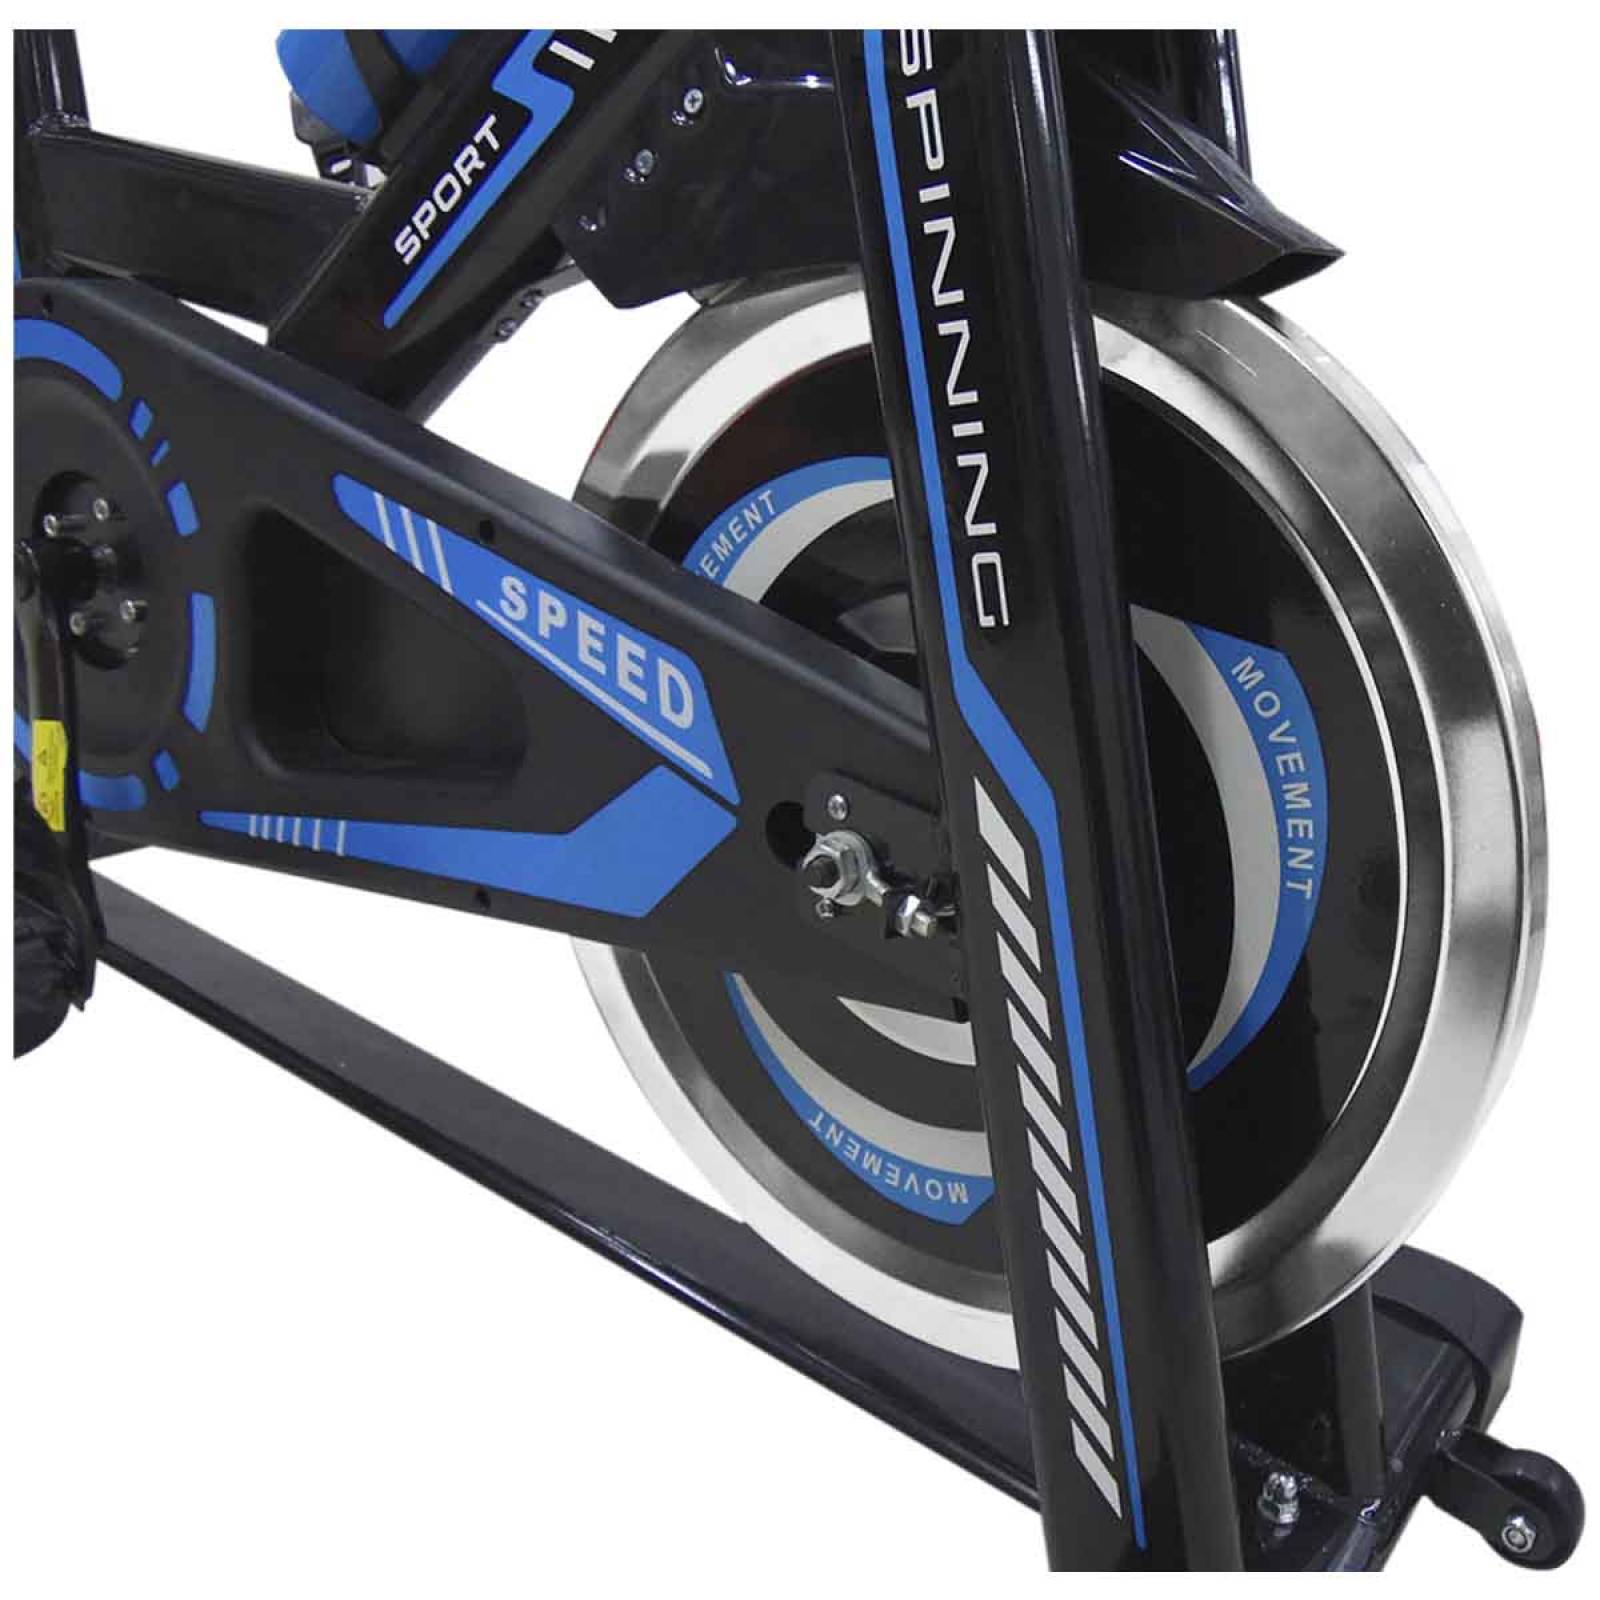 Bicicleta Spinning Fitness Estatica De Ejercicio Hogar Gym Azul/Negro